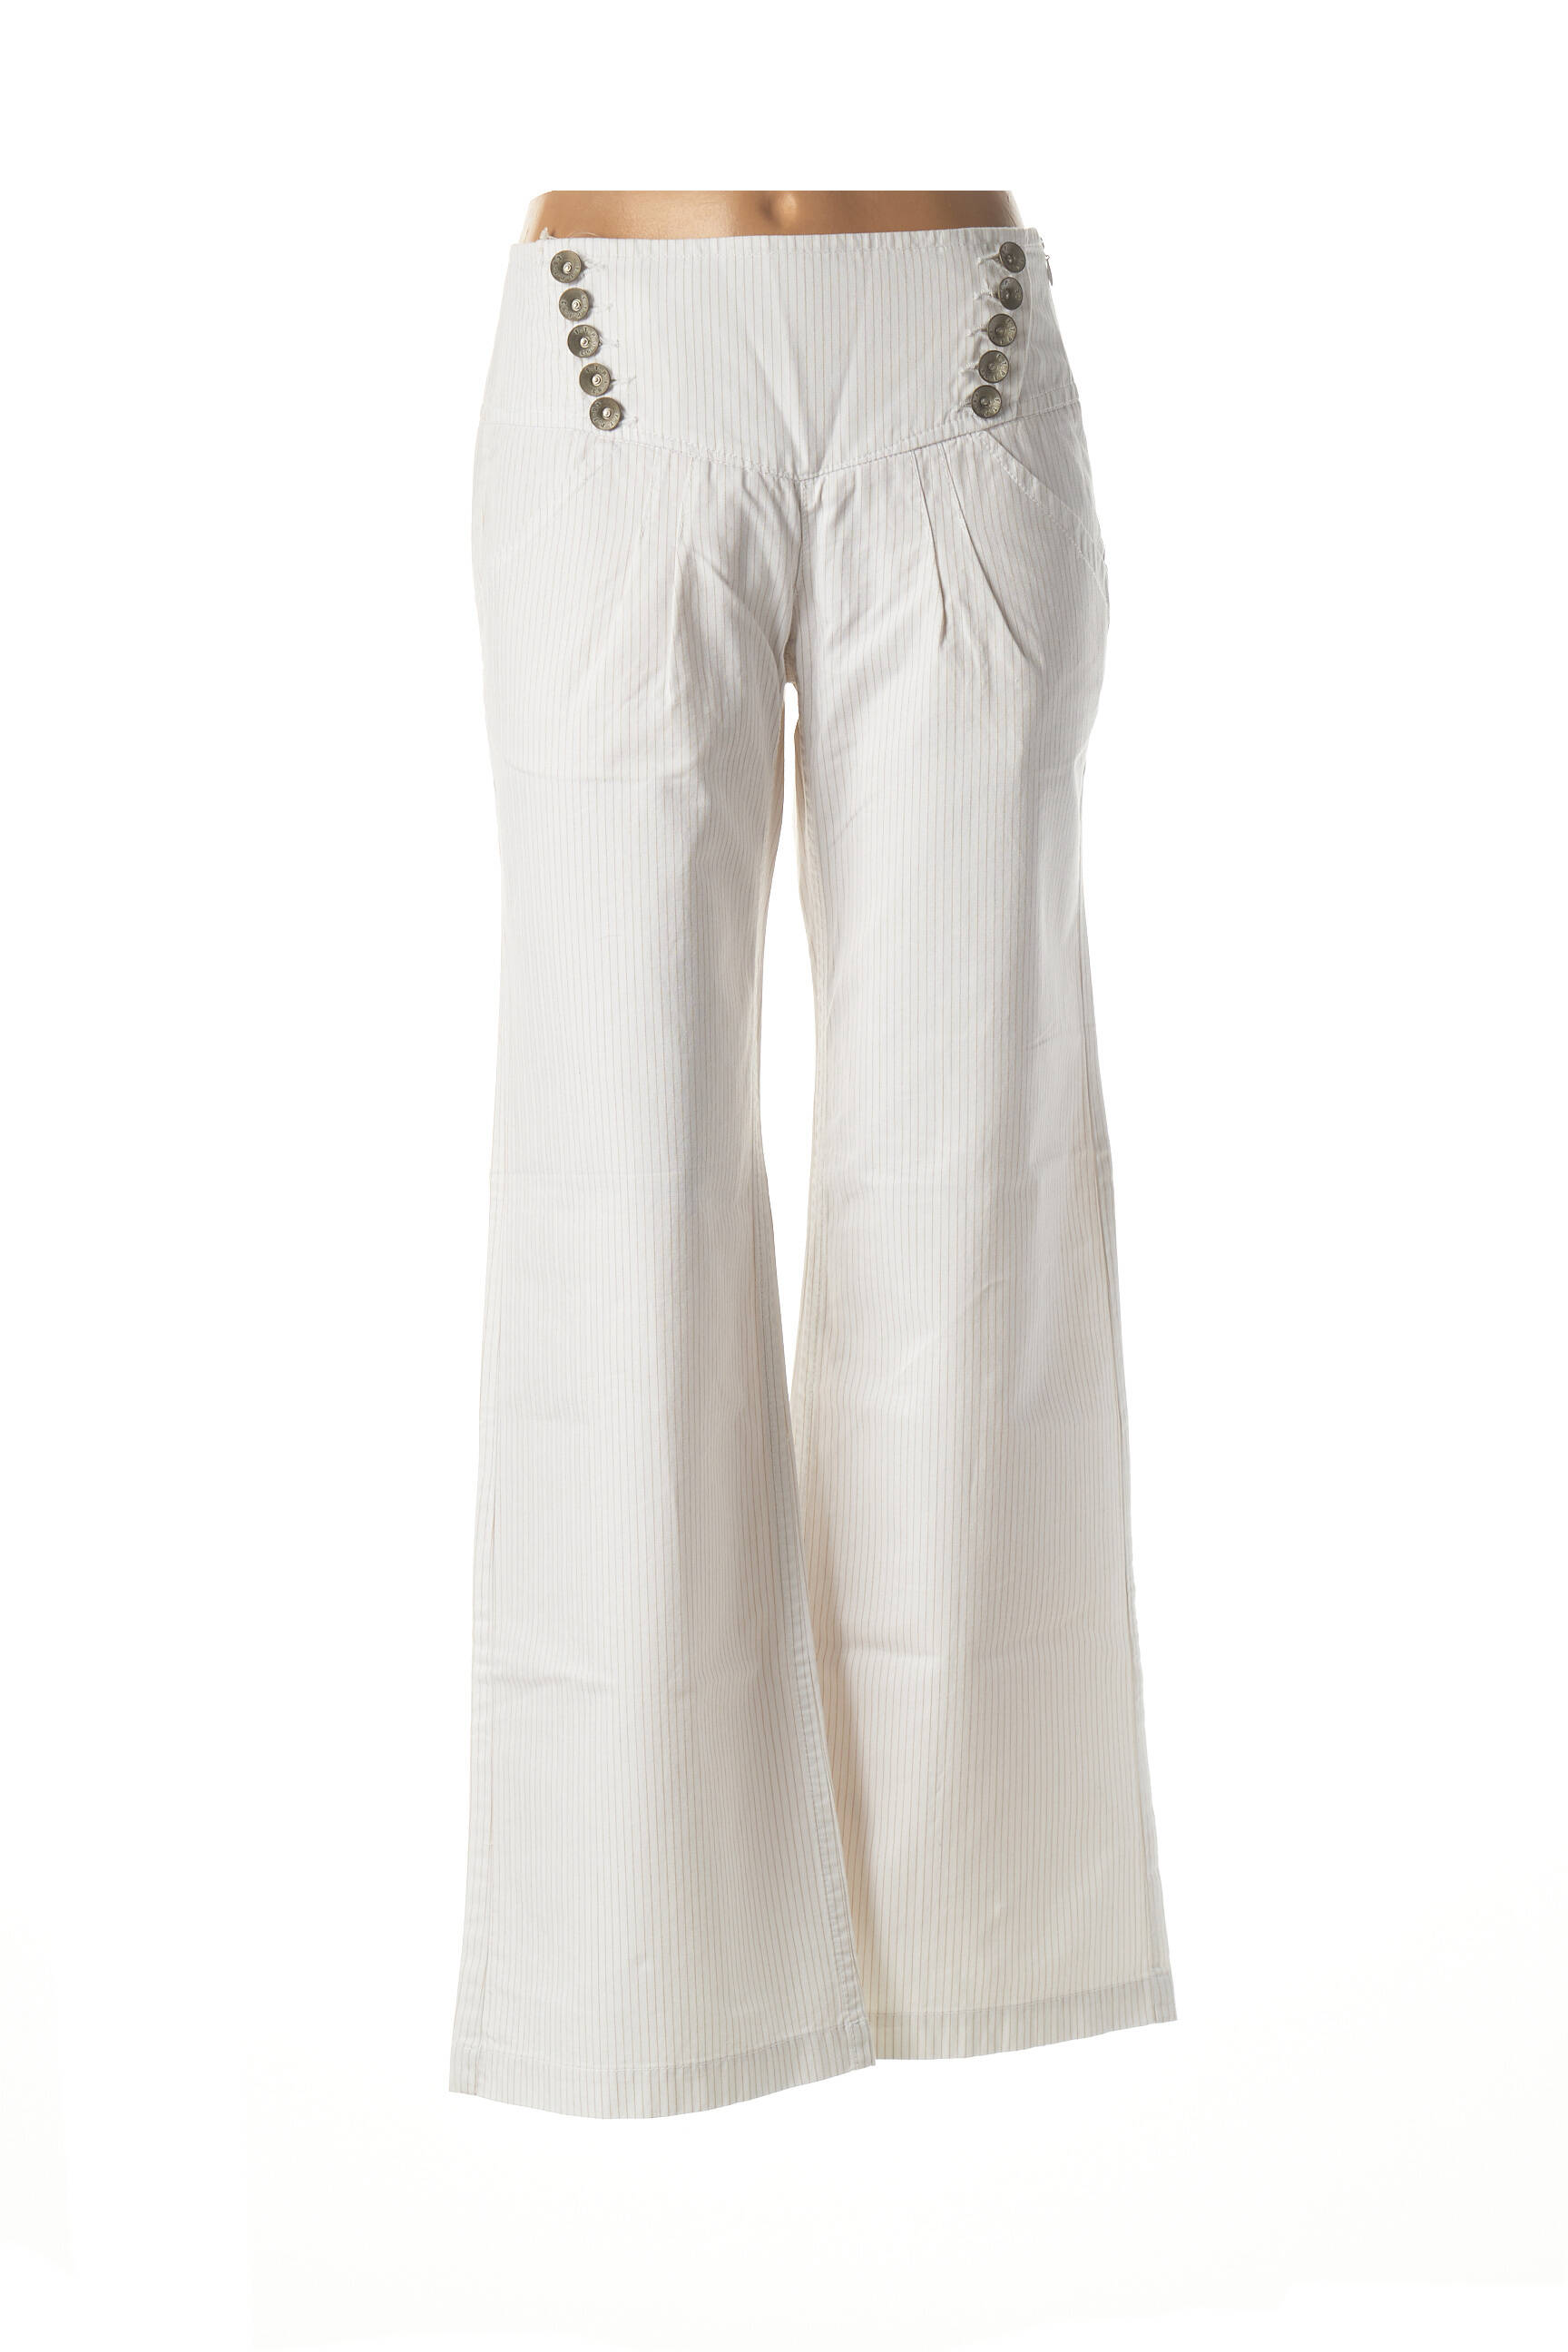 Mavi Pantalon large blanc-bleu fonc\u00e9 motif graphique style d\u00e9contract\u00e9 Mode Pantalons Pantalons larges 